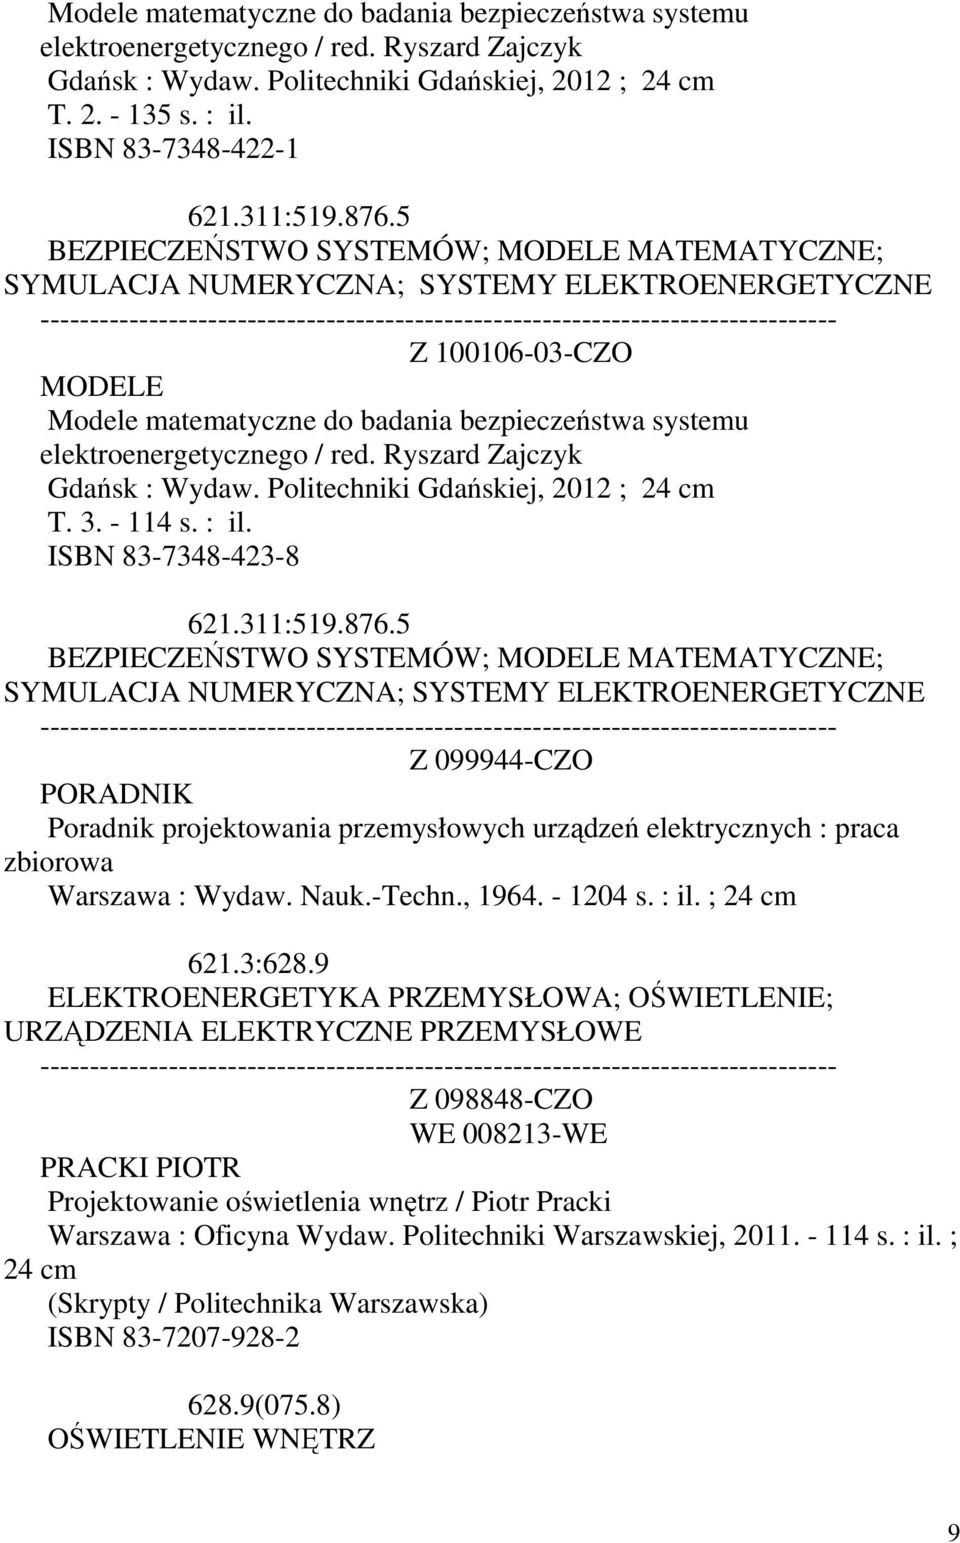 elektroenergetycznego / red. Ryszard Zajczyk Gdańsk : Wydaw. Politechniki Gdańskiej, 2012 ; T. 3. - 114 s. : il. ISBN 83-7348-423-8 621.311:519.876.